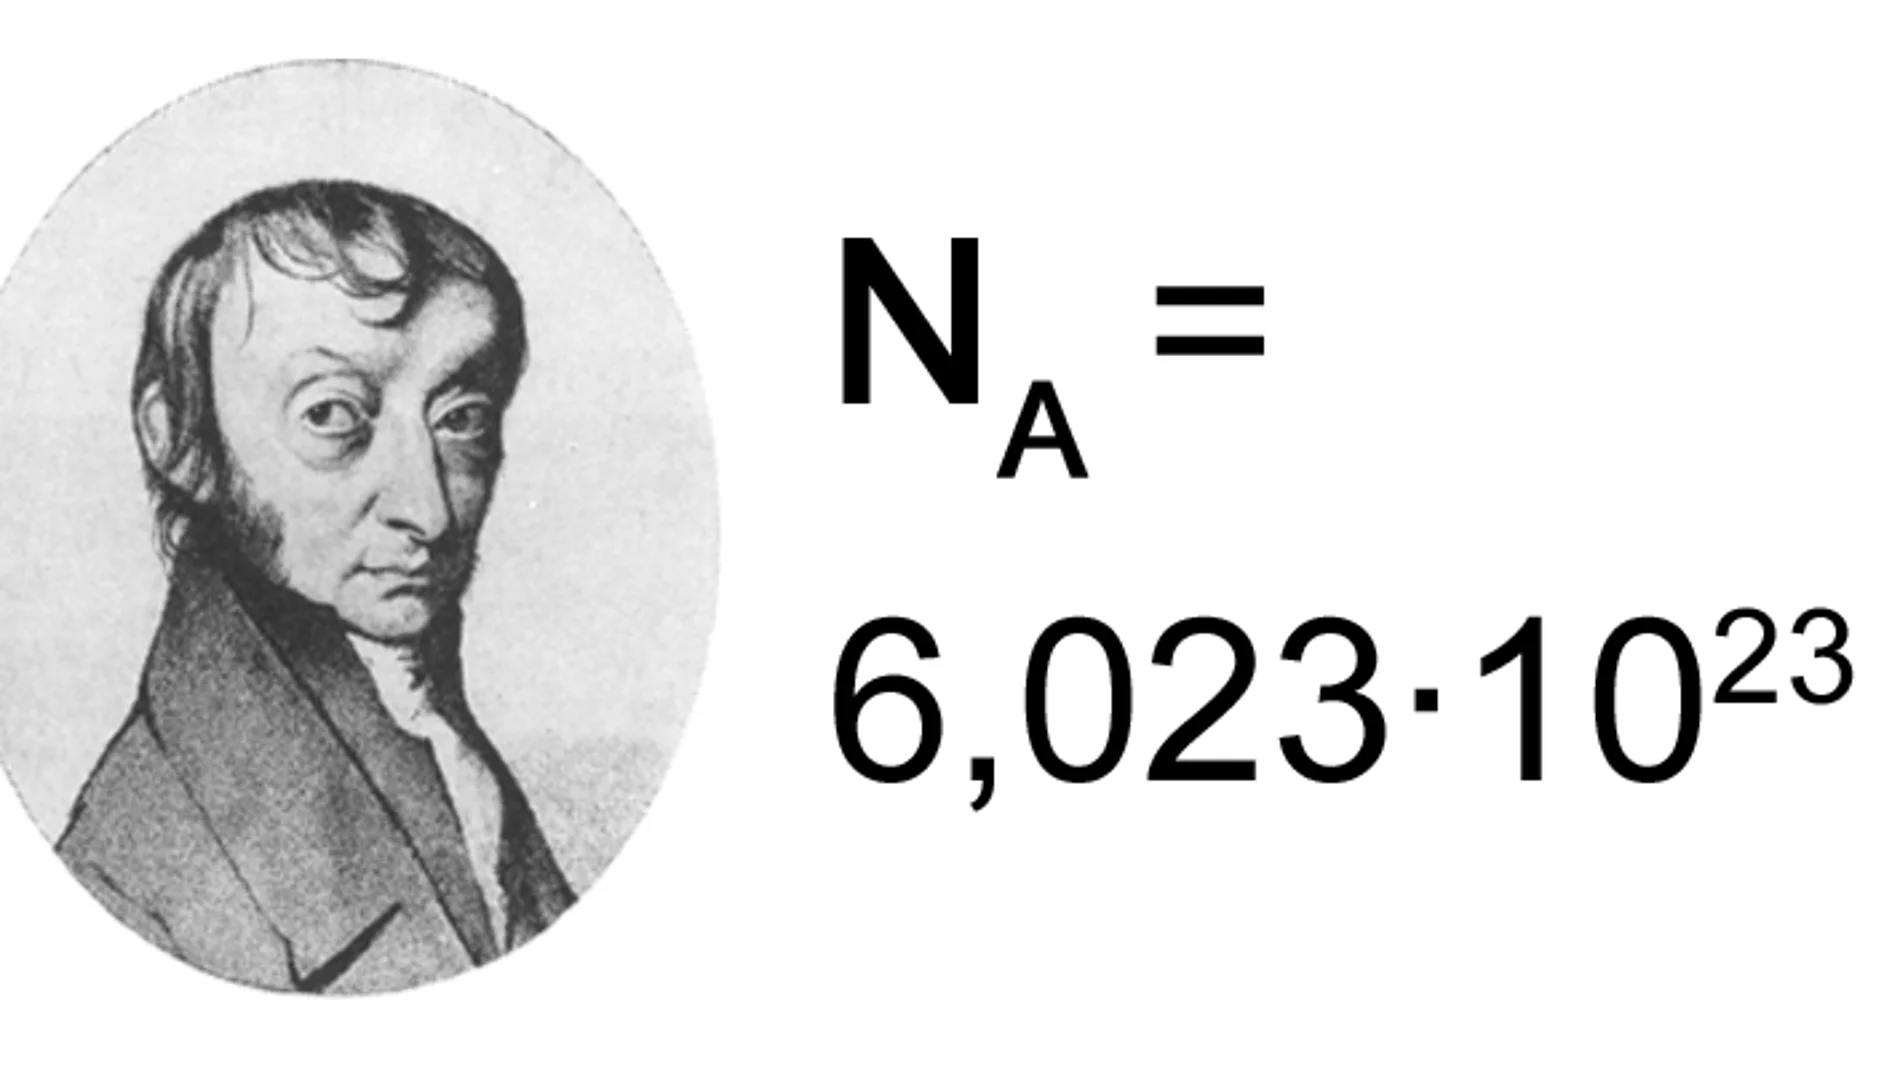 El número de Avogadro, también conocido como el número mol